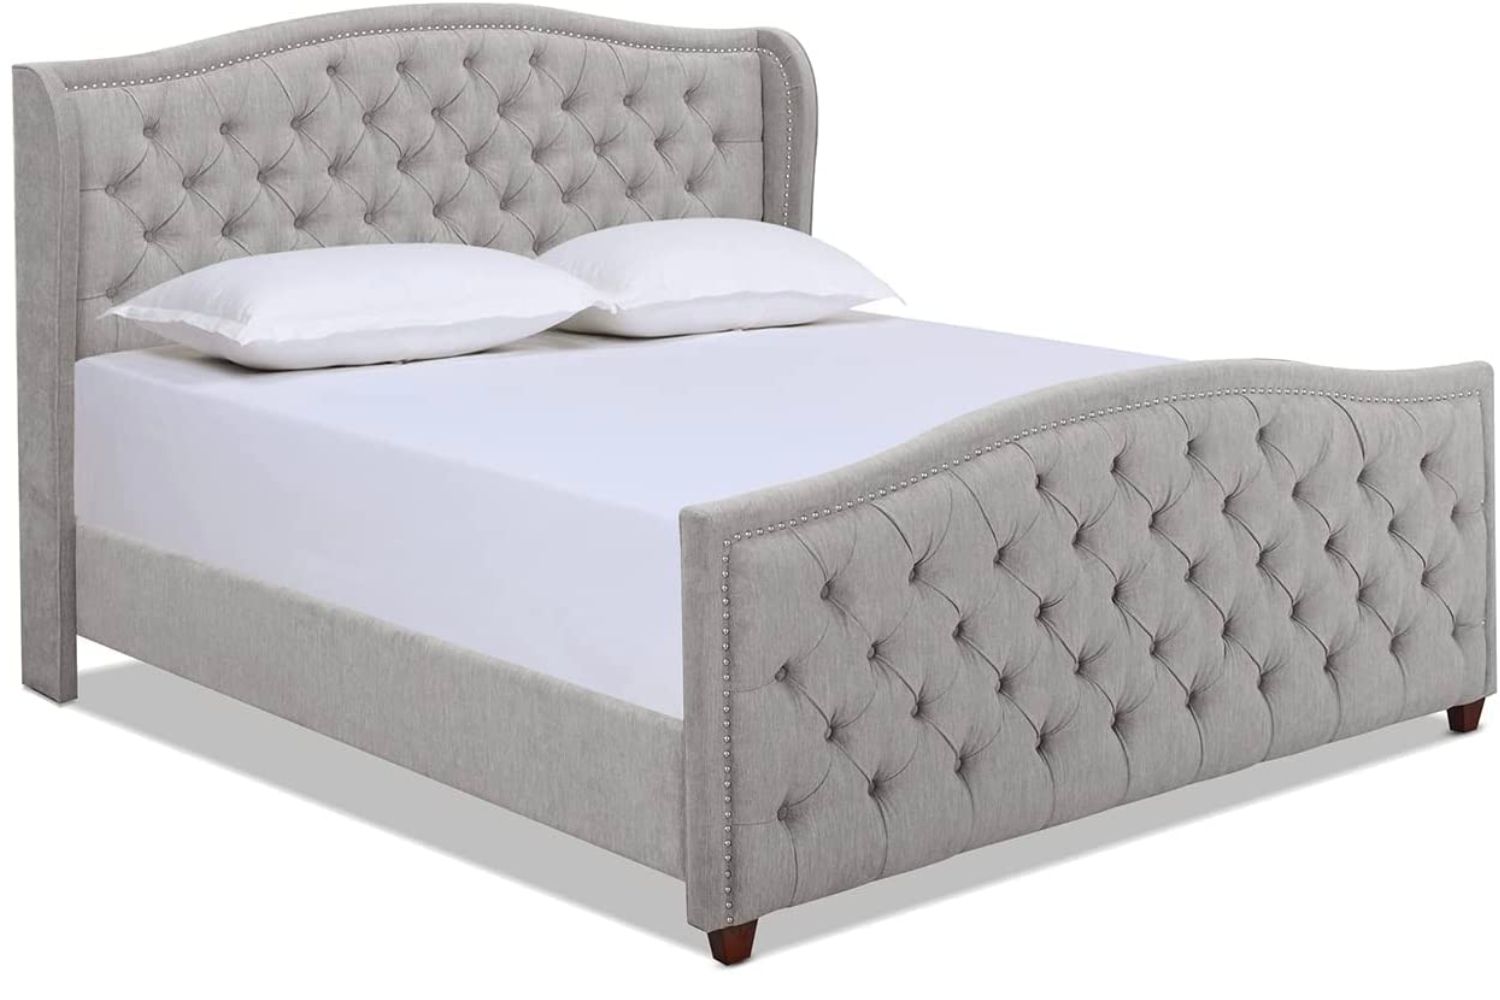 The Best Furniture Deals Option: Jennifer Taylor Home Marcella King Platform Bed